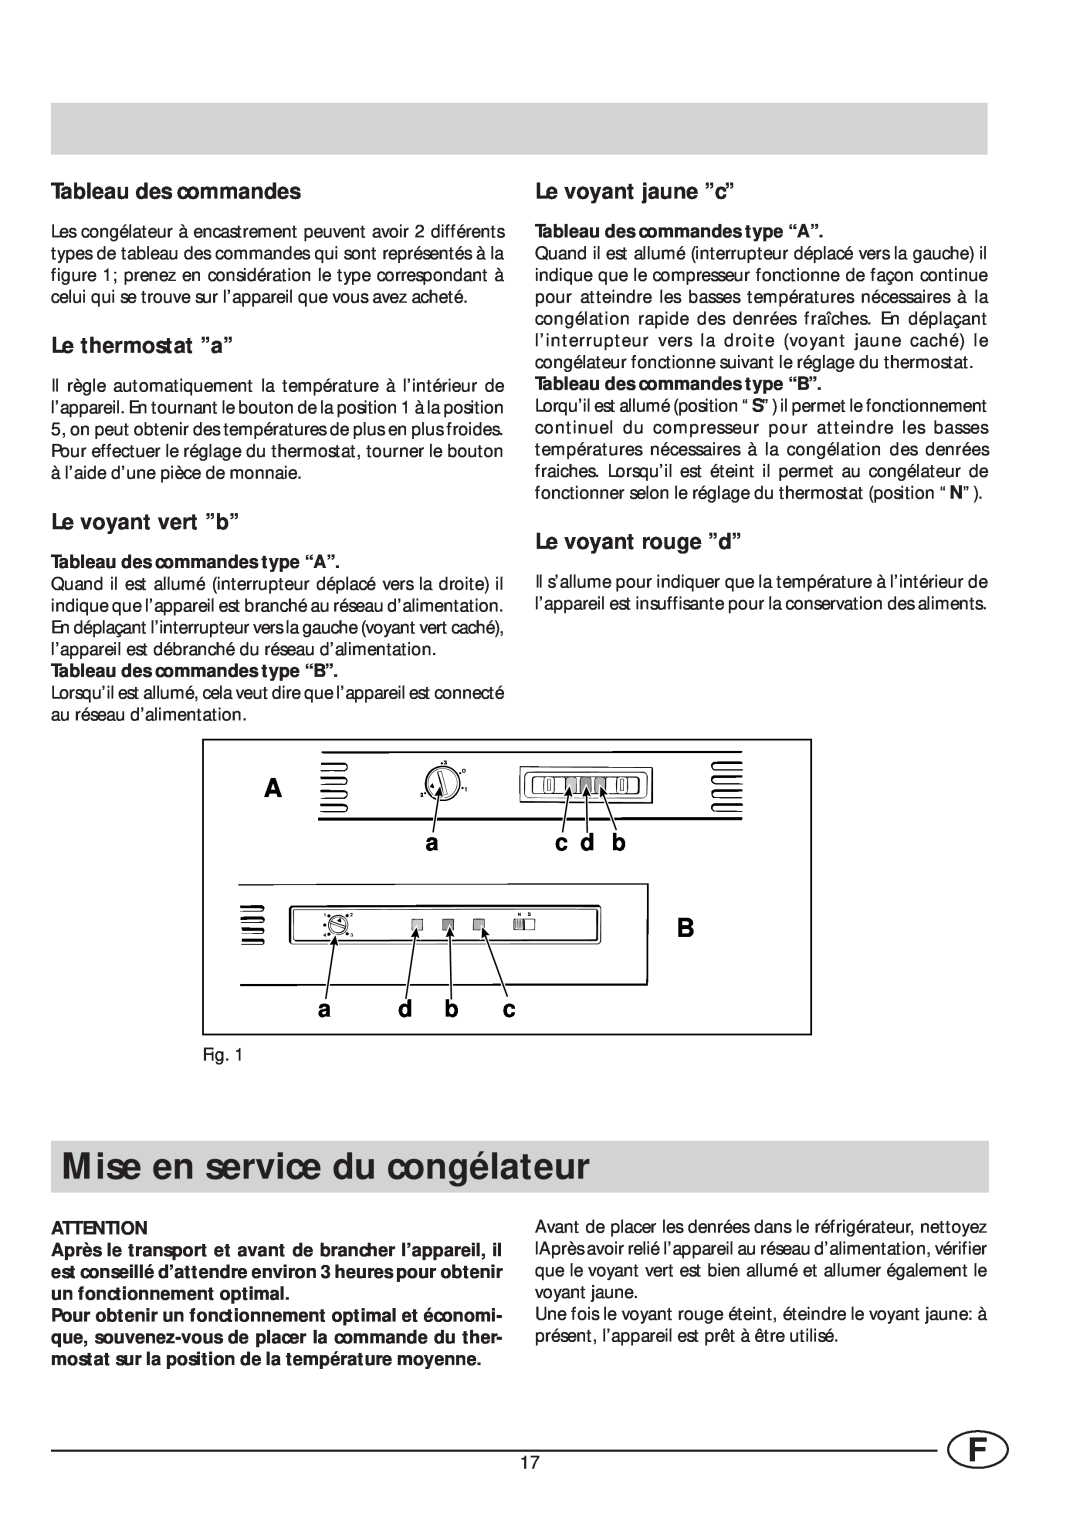 Smeg VR105NE1 Mise en service du congélateur, Tableau des commandes, Le thermostat ’’a’’, Le voyant vert ’’b’’, c d b 